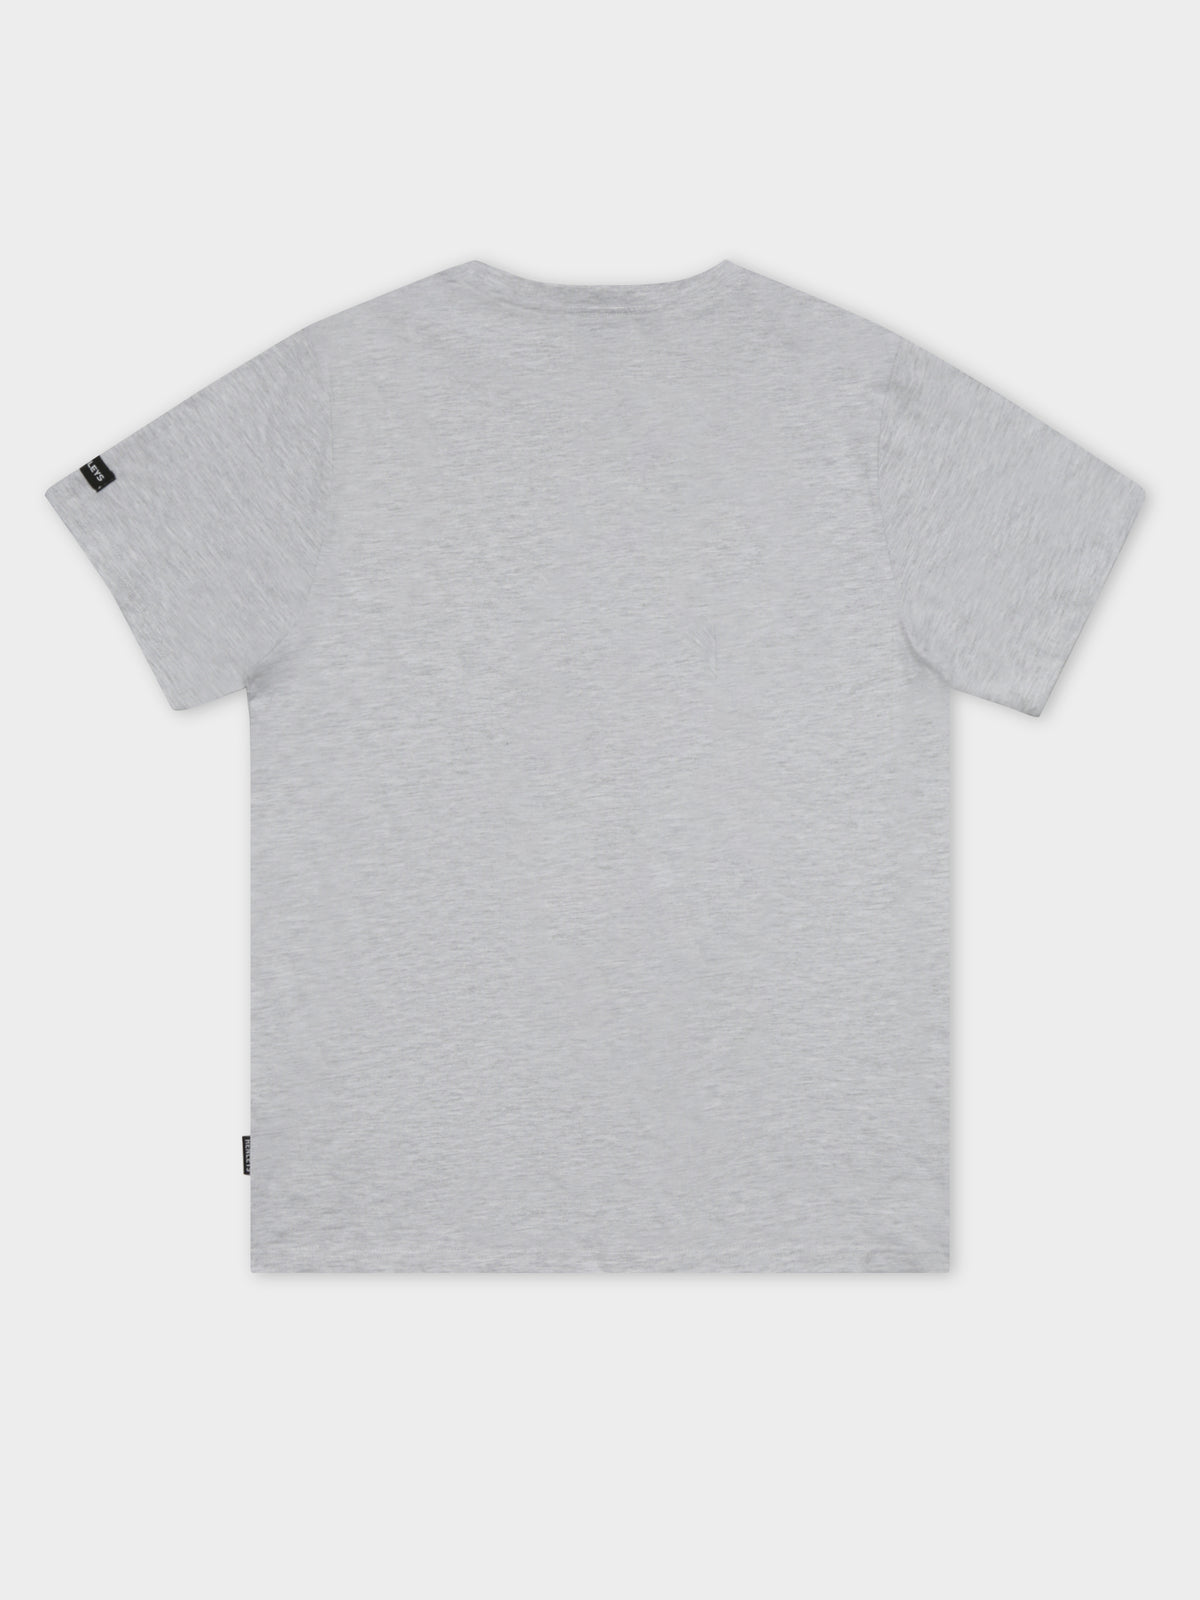 Heisman T-Shirt in Snow Marle